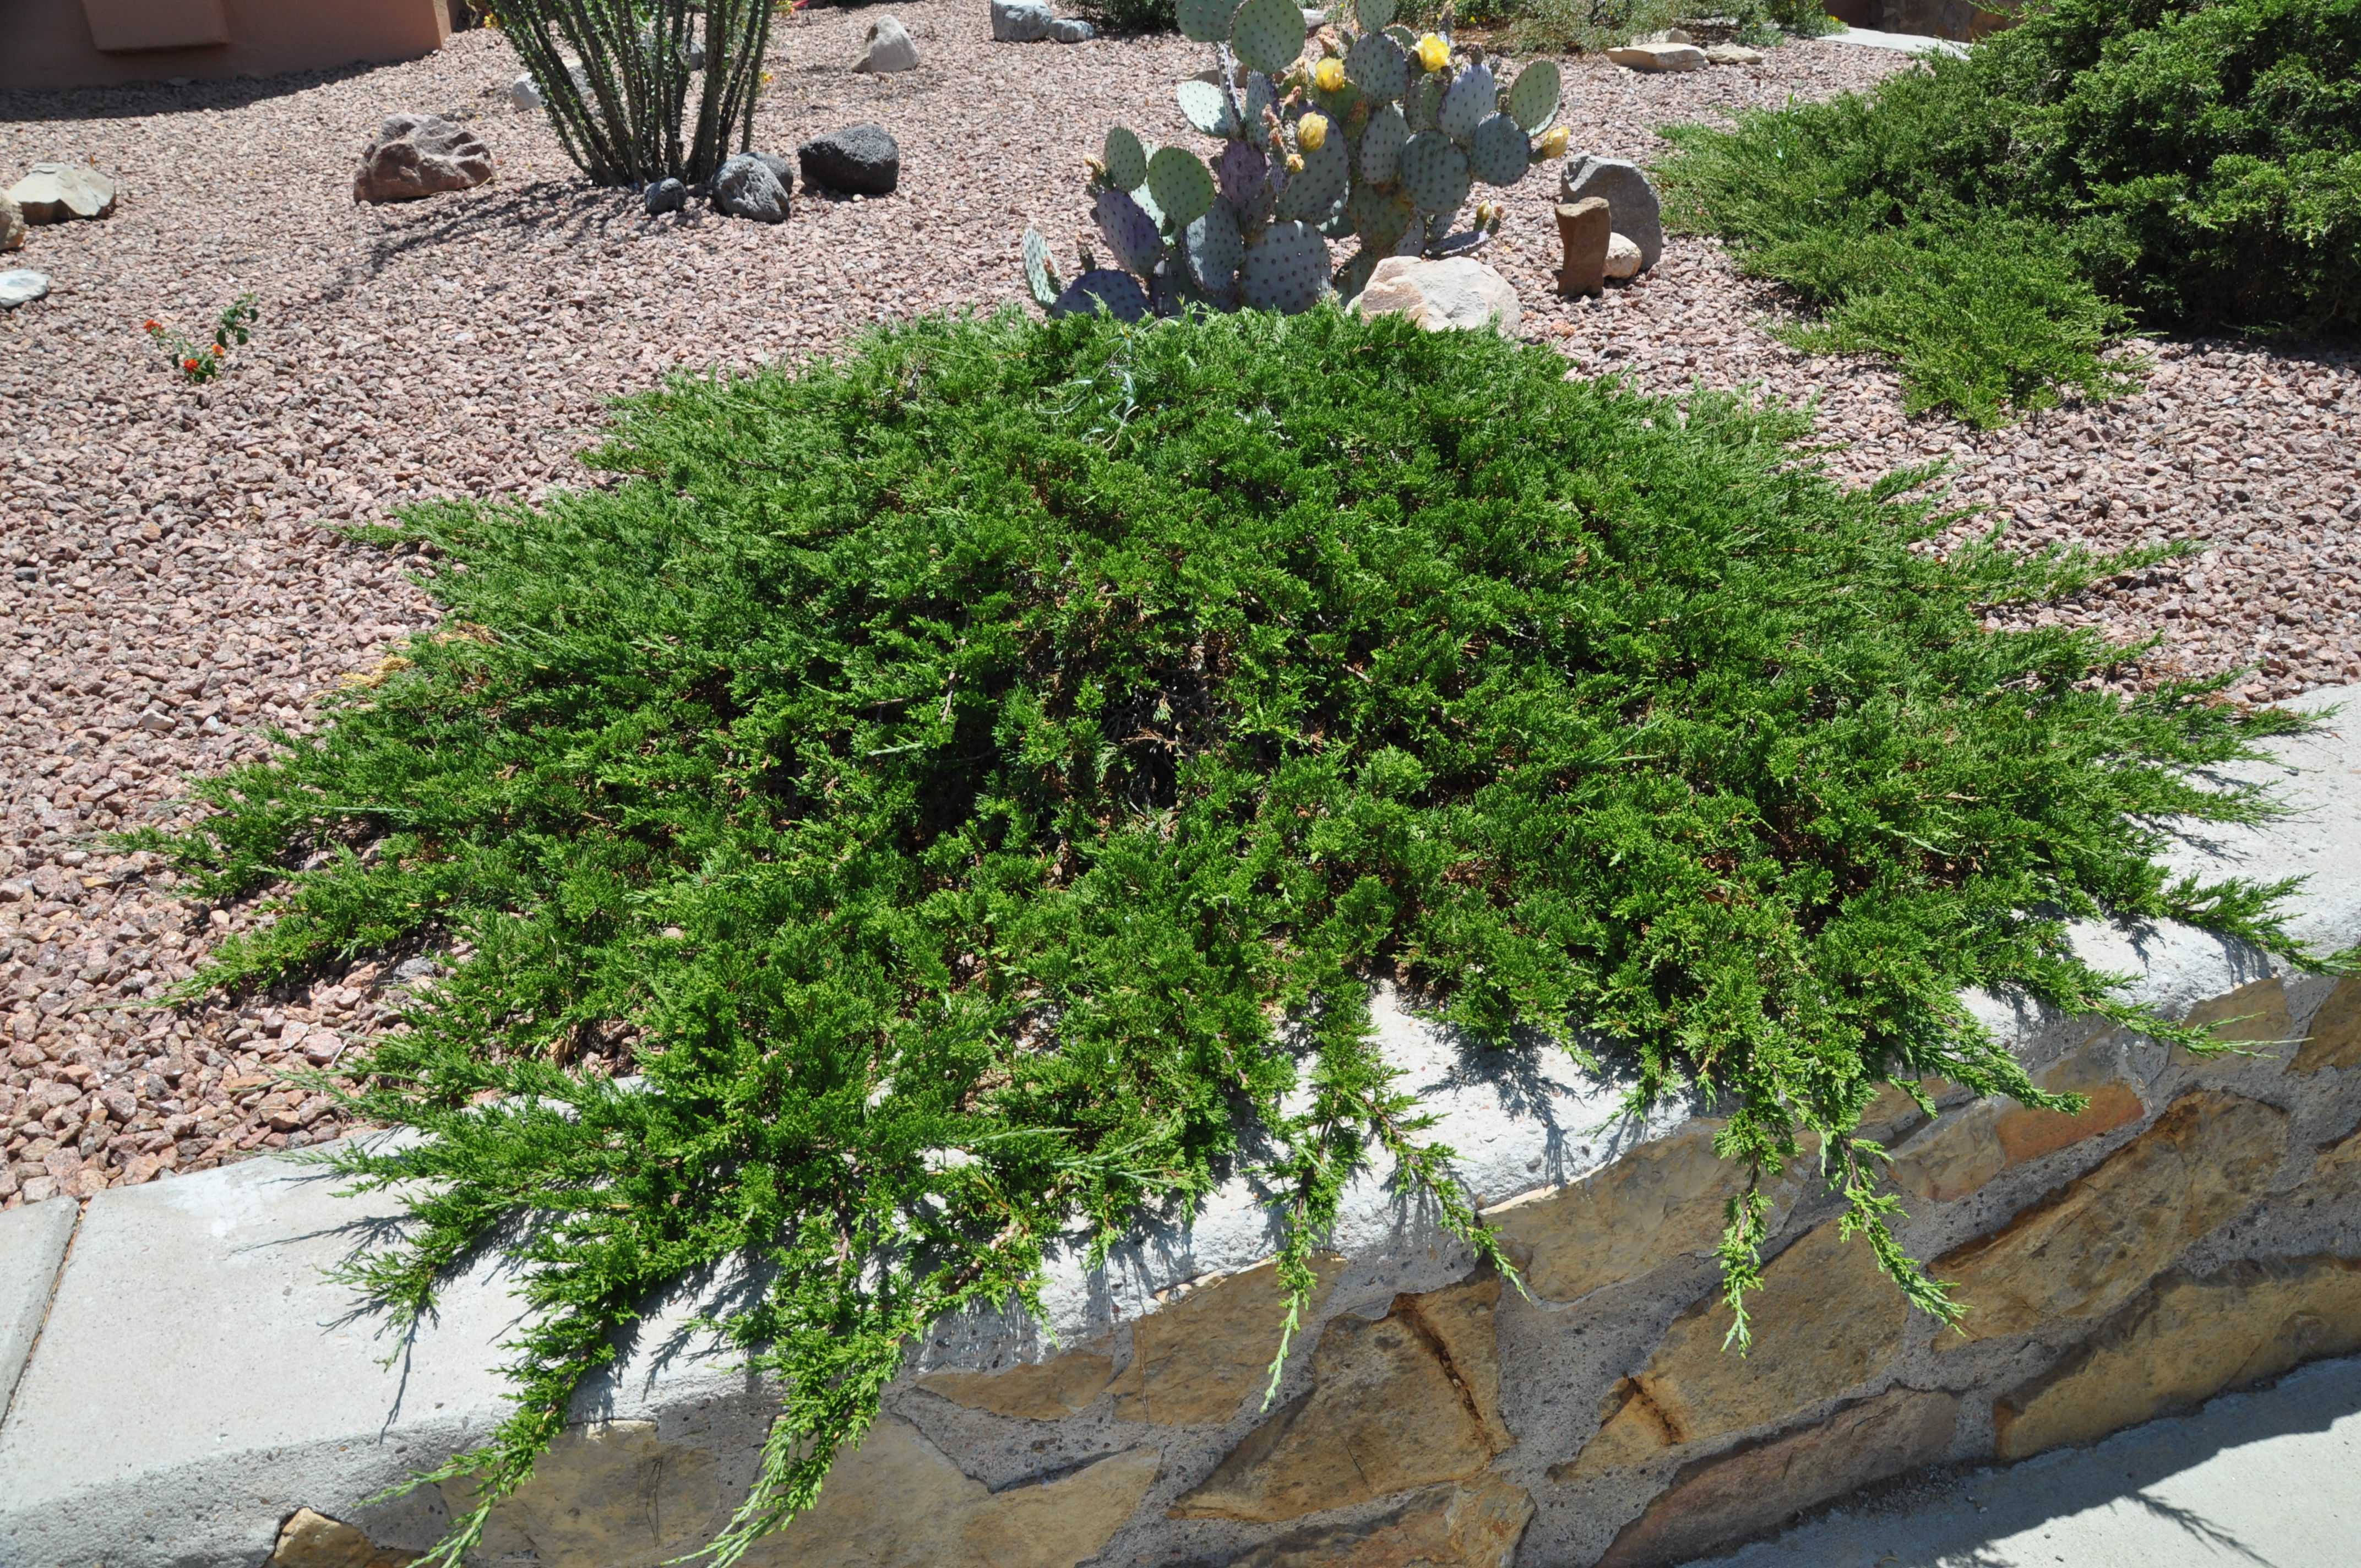 Можжевельник казацкий тамарисцифолия (tamariscifolia): описание и фото, использование в ландшафтном дизайне сада, посадка и уход - ваш дачный участок